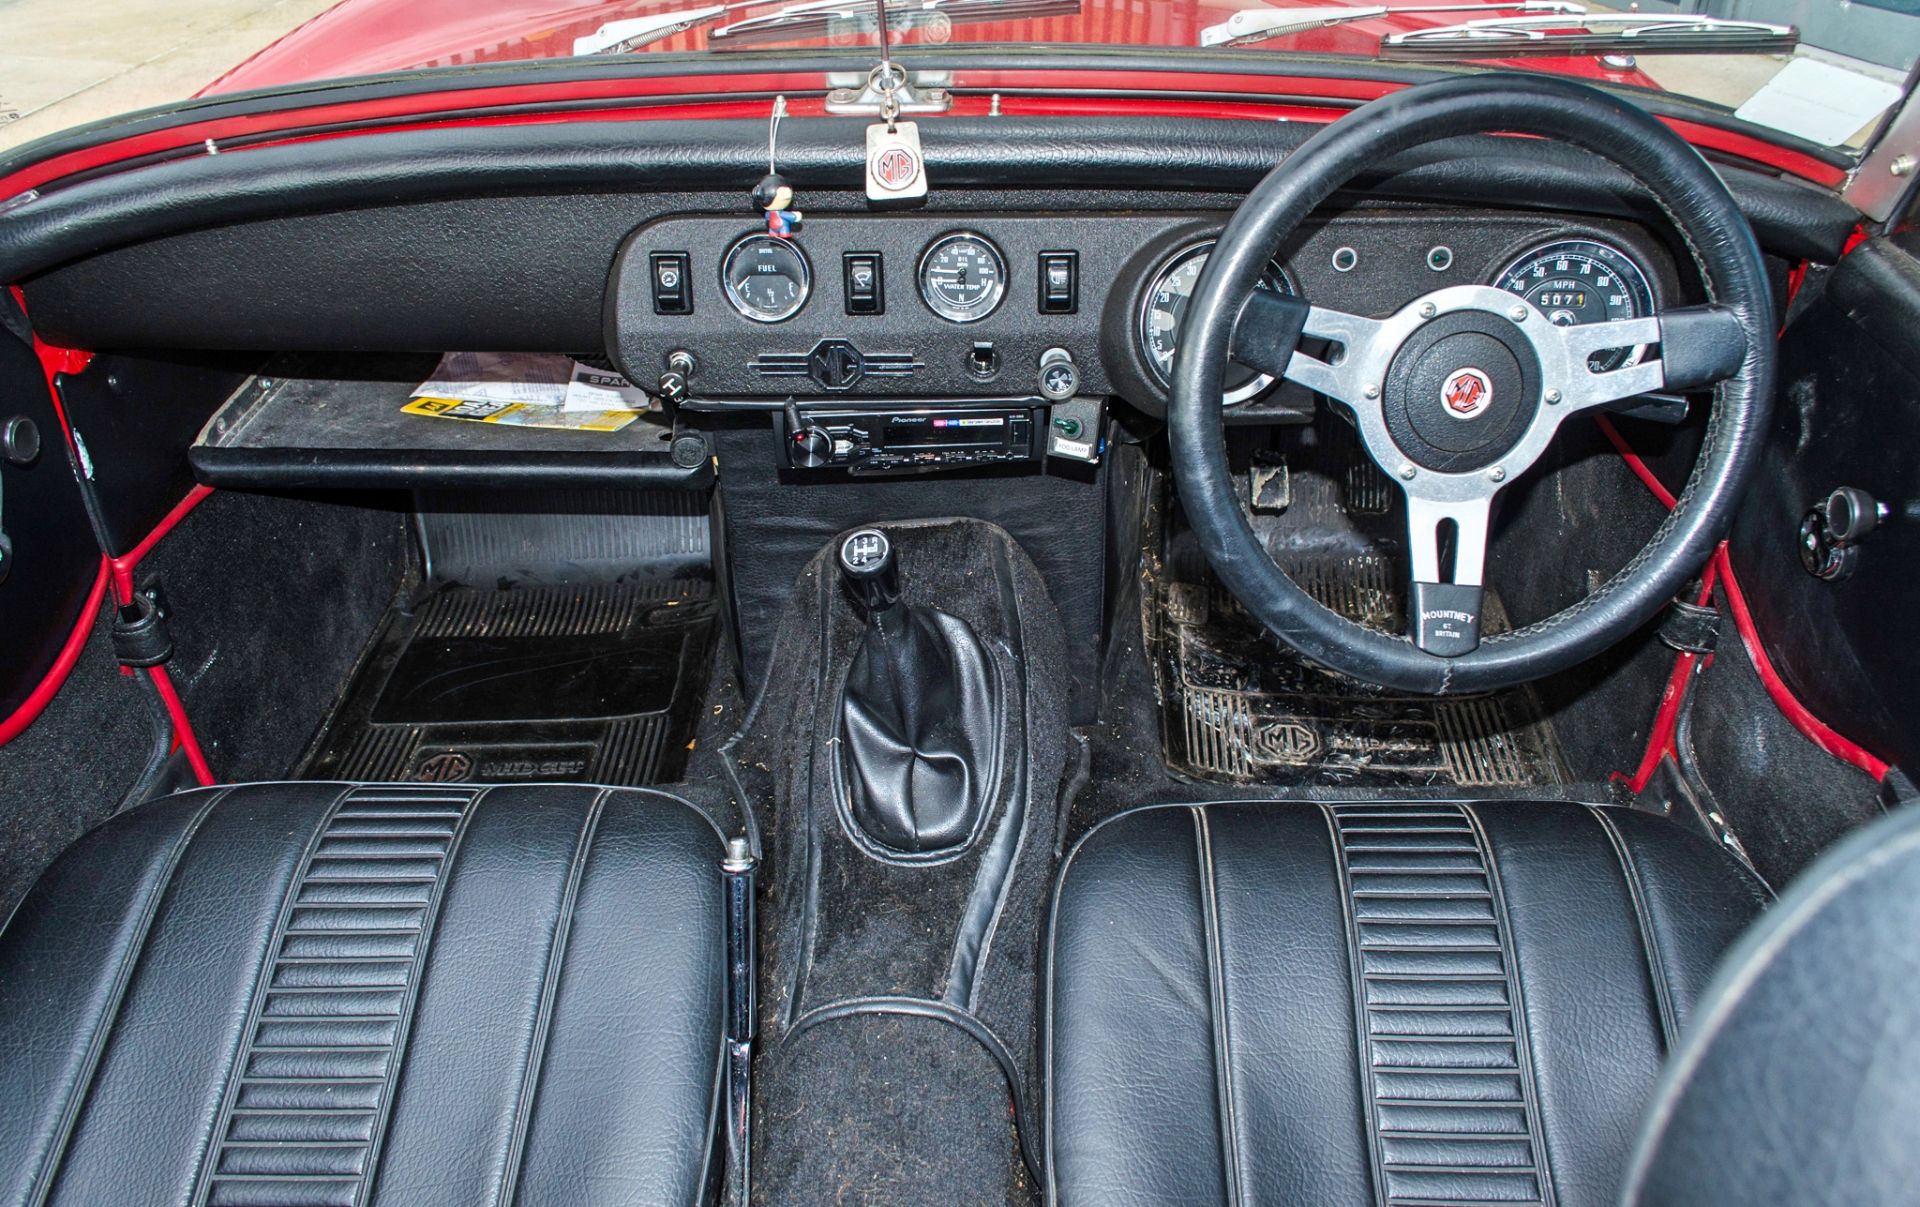 1975 MG Midget 1500 1491cc 2 door convertible - Image 41 of 55